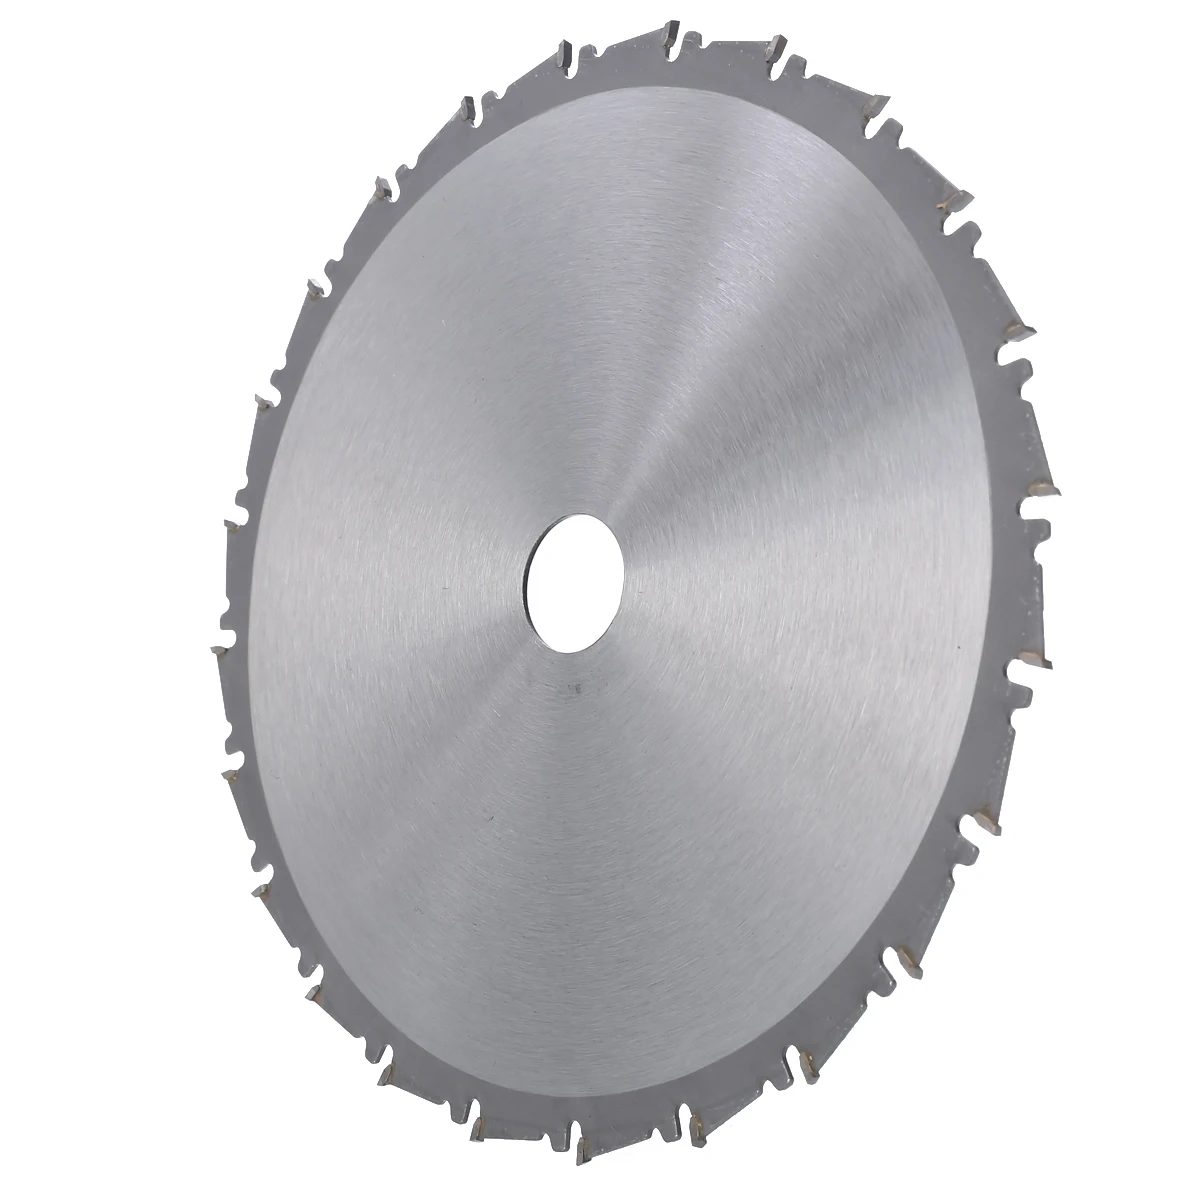 Mayitr 1 шт., 210 мм, для резки дерева, металлические дисковые пилы для плитки, керамические, деревянные, алюминиевые дисковые алмазные режущие лезвия